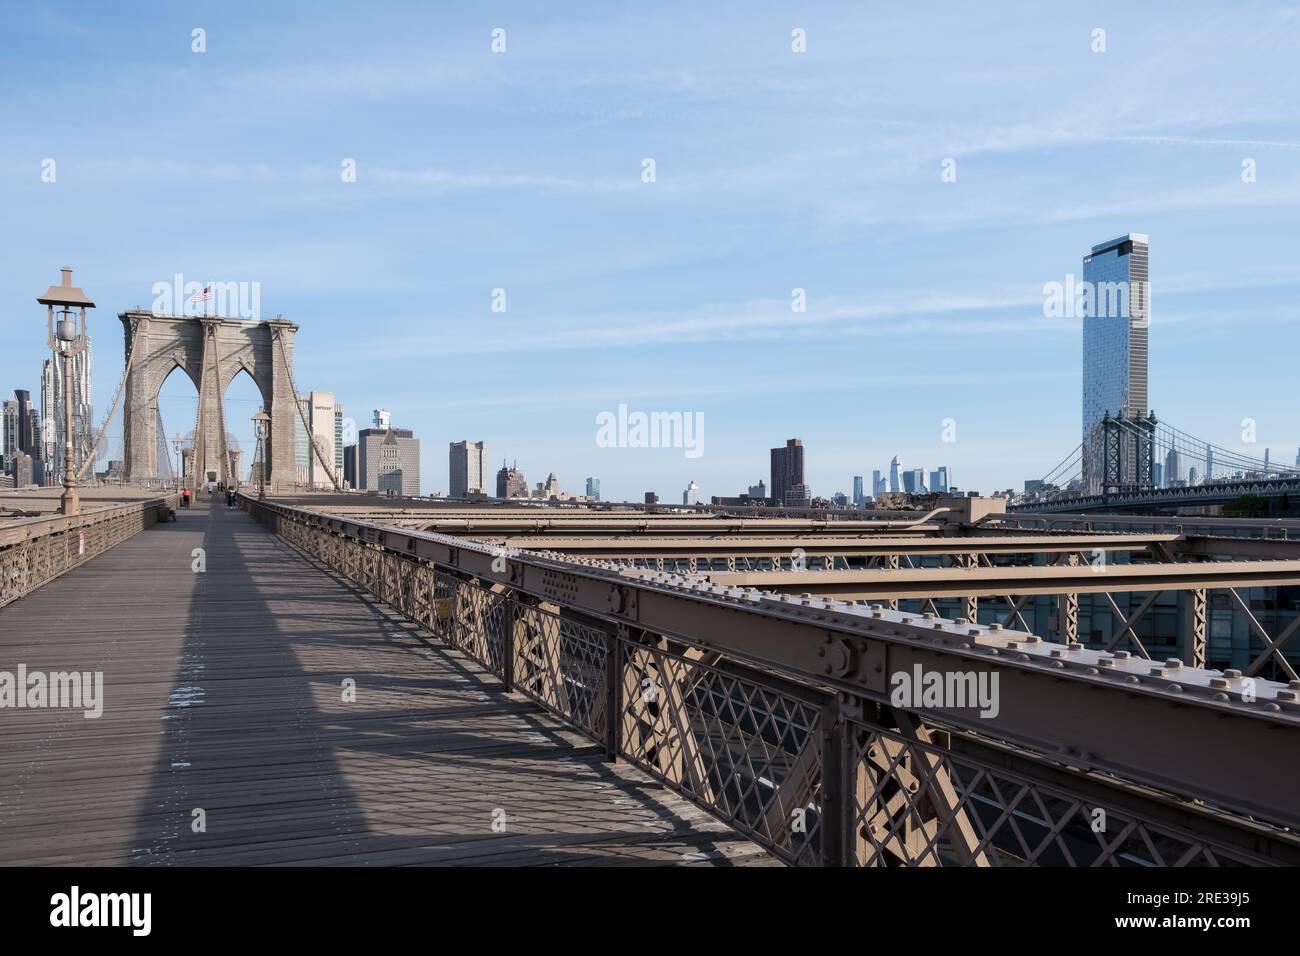 Detalle arquitectónico del Puente de Brooklyn, un puente híbrido atirantado/suspendido en la ciudad de Nueva York, entre los distritos de Manhattan y Brooklyn. Foto de stock